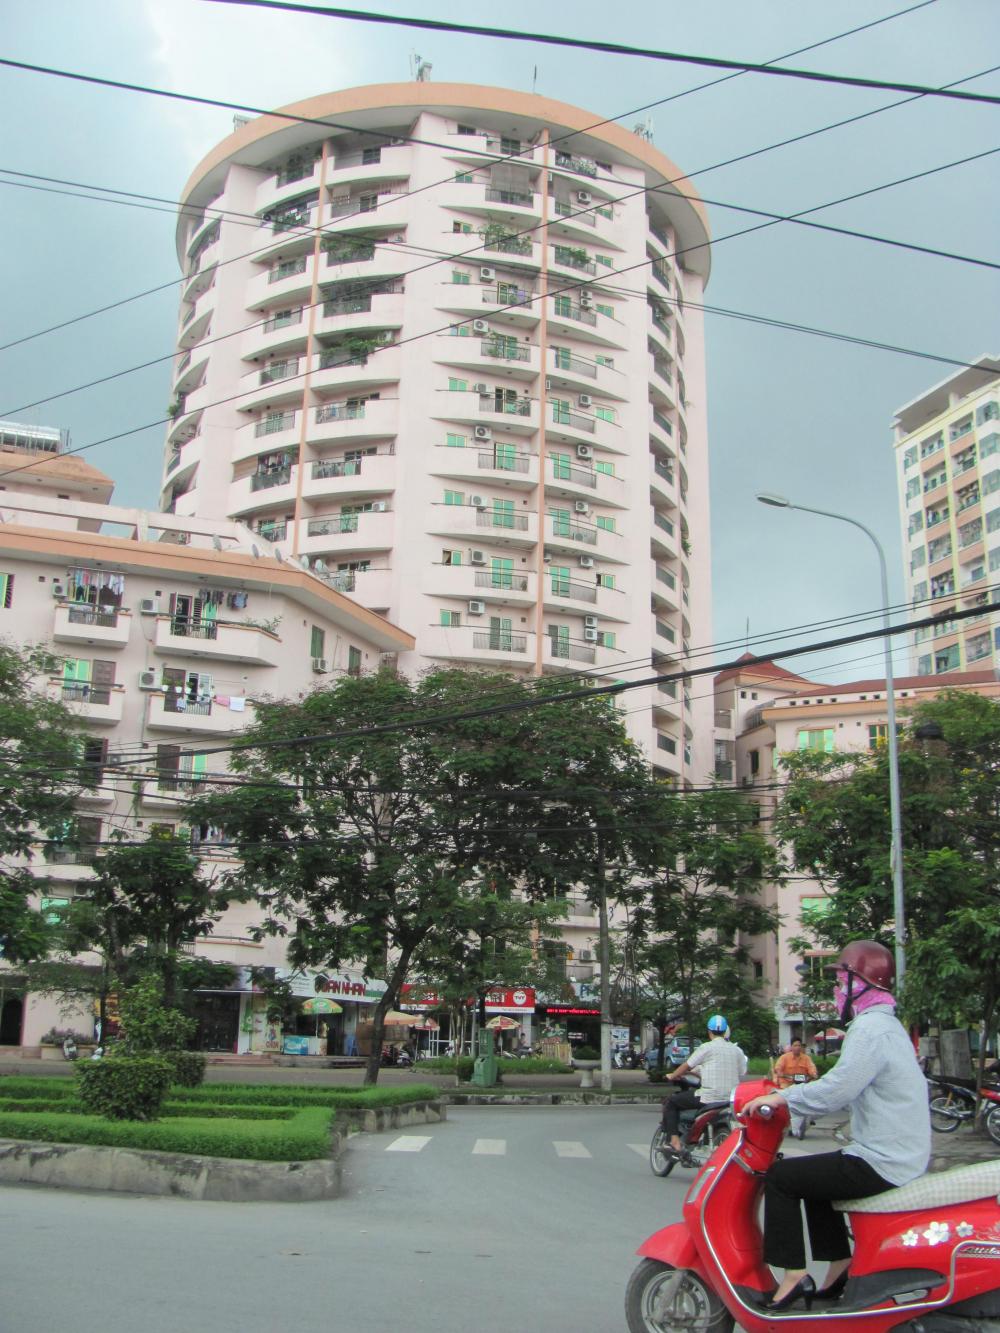 Giá rẻ bán căn hộ A3 Làng Quốc tế Thăng Long, 110.8m2, 3PN giá 26.5tr/m2 (TL), LH: 0964897596 9944972